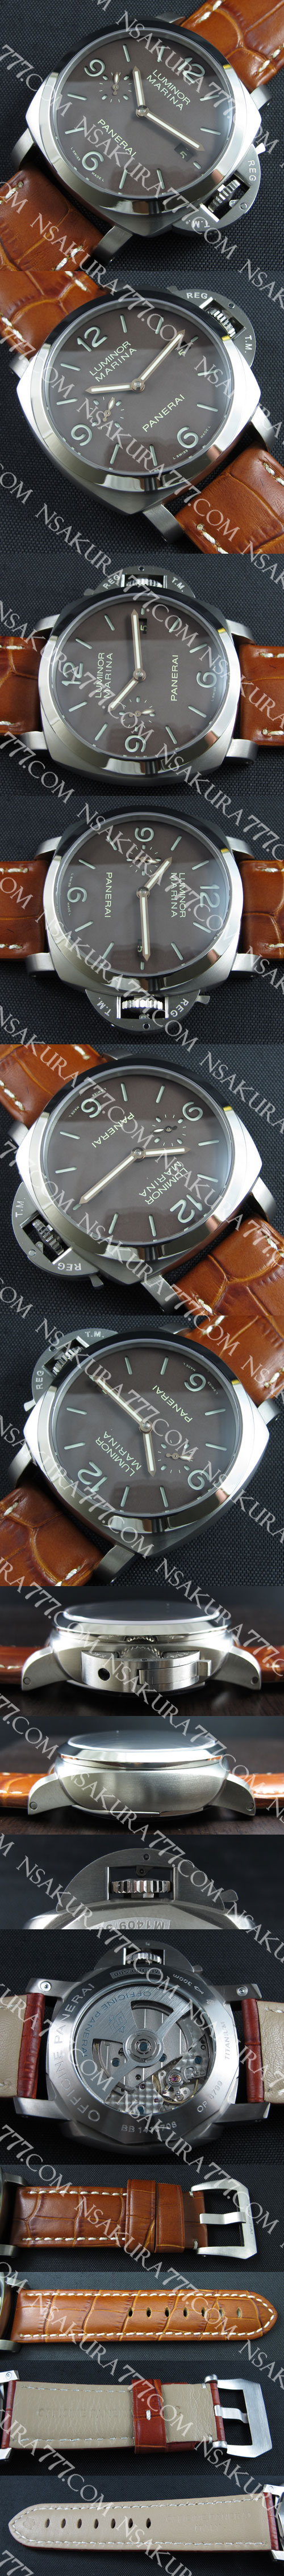 高級取り扱い腕時計パネライ ルミノール マリーナ PAM00352(ブラウン高級ベルト)